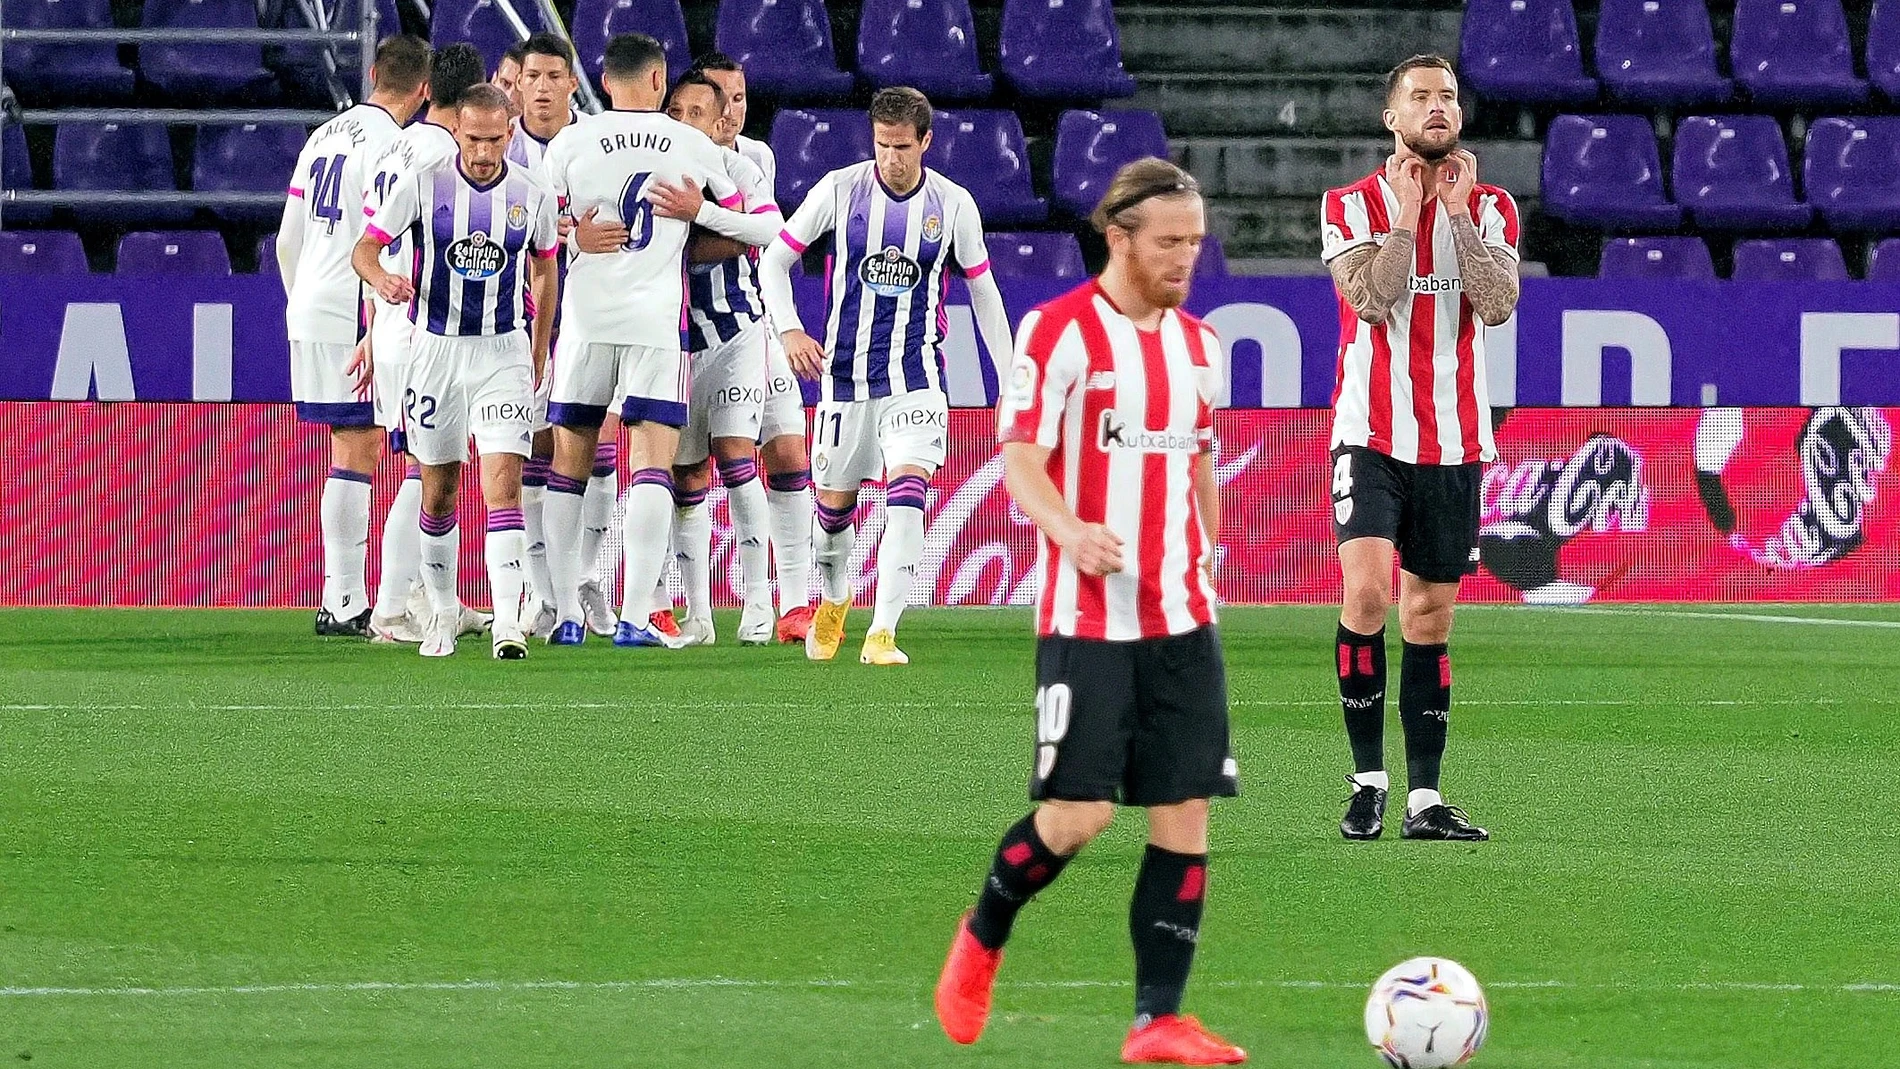 Los jugadores del Valladolid celebran el gol ante el Athletic, durante el partido de Liga en Primera División que disputan este domingo en el estadio José Zorrilla. EFE/R. García